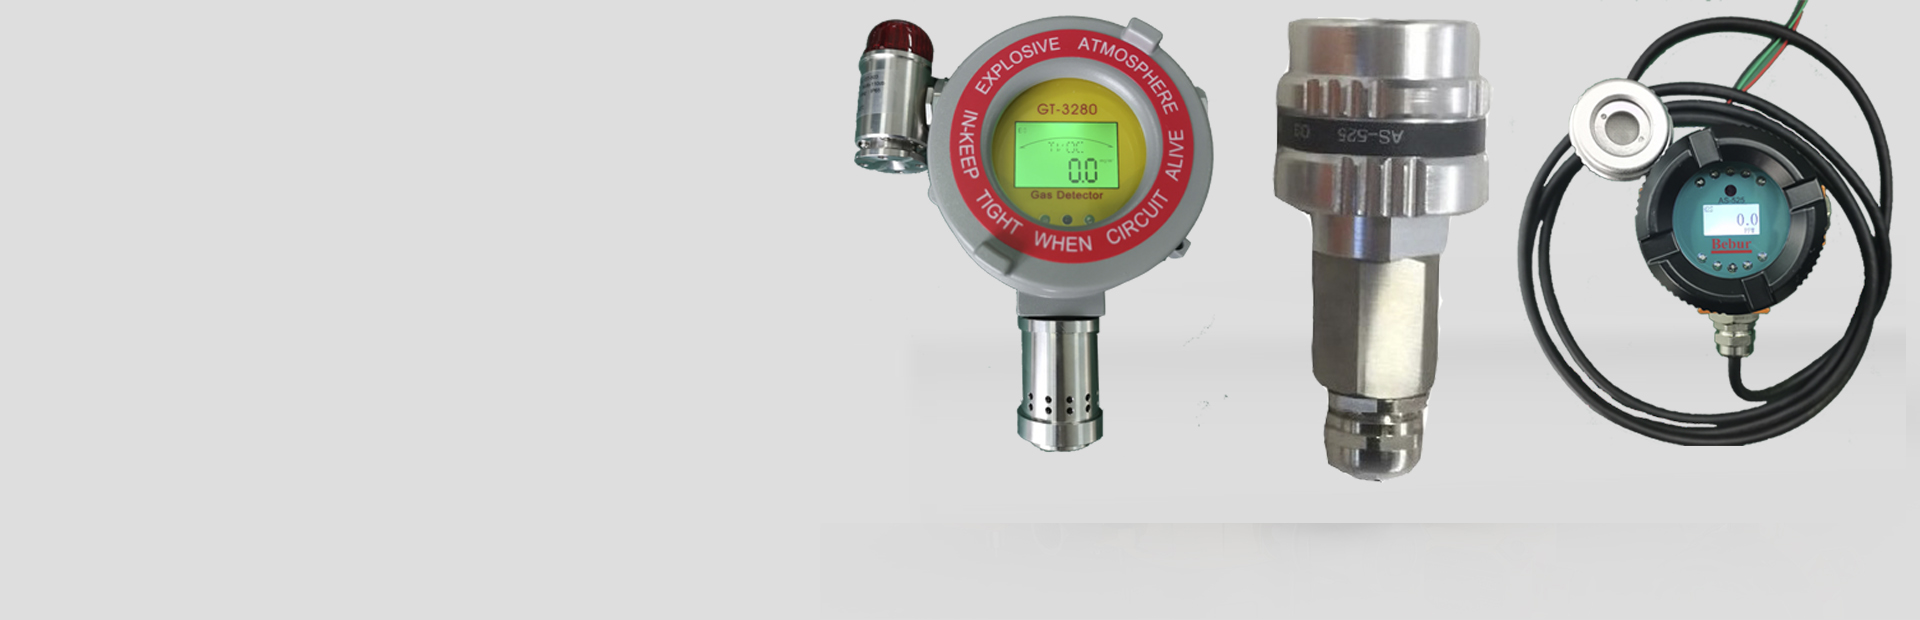 BT6108-Soli水质悬浮物分析仪系列产品